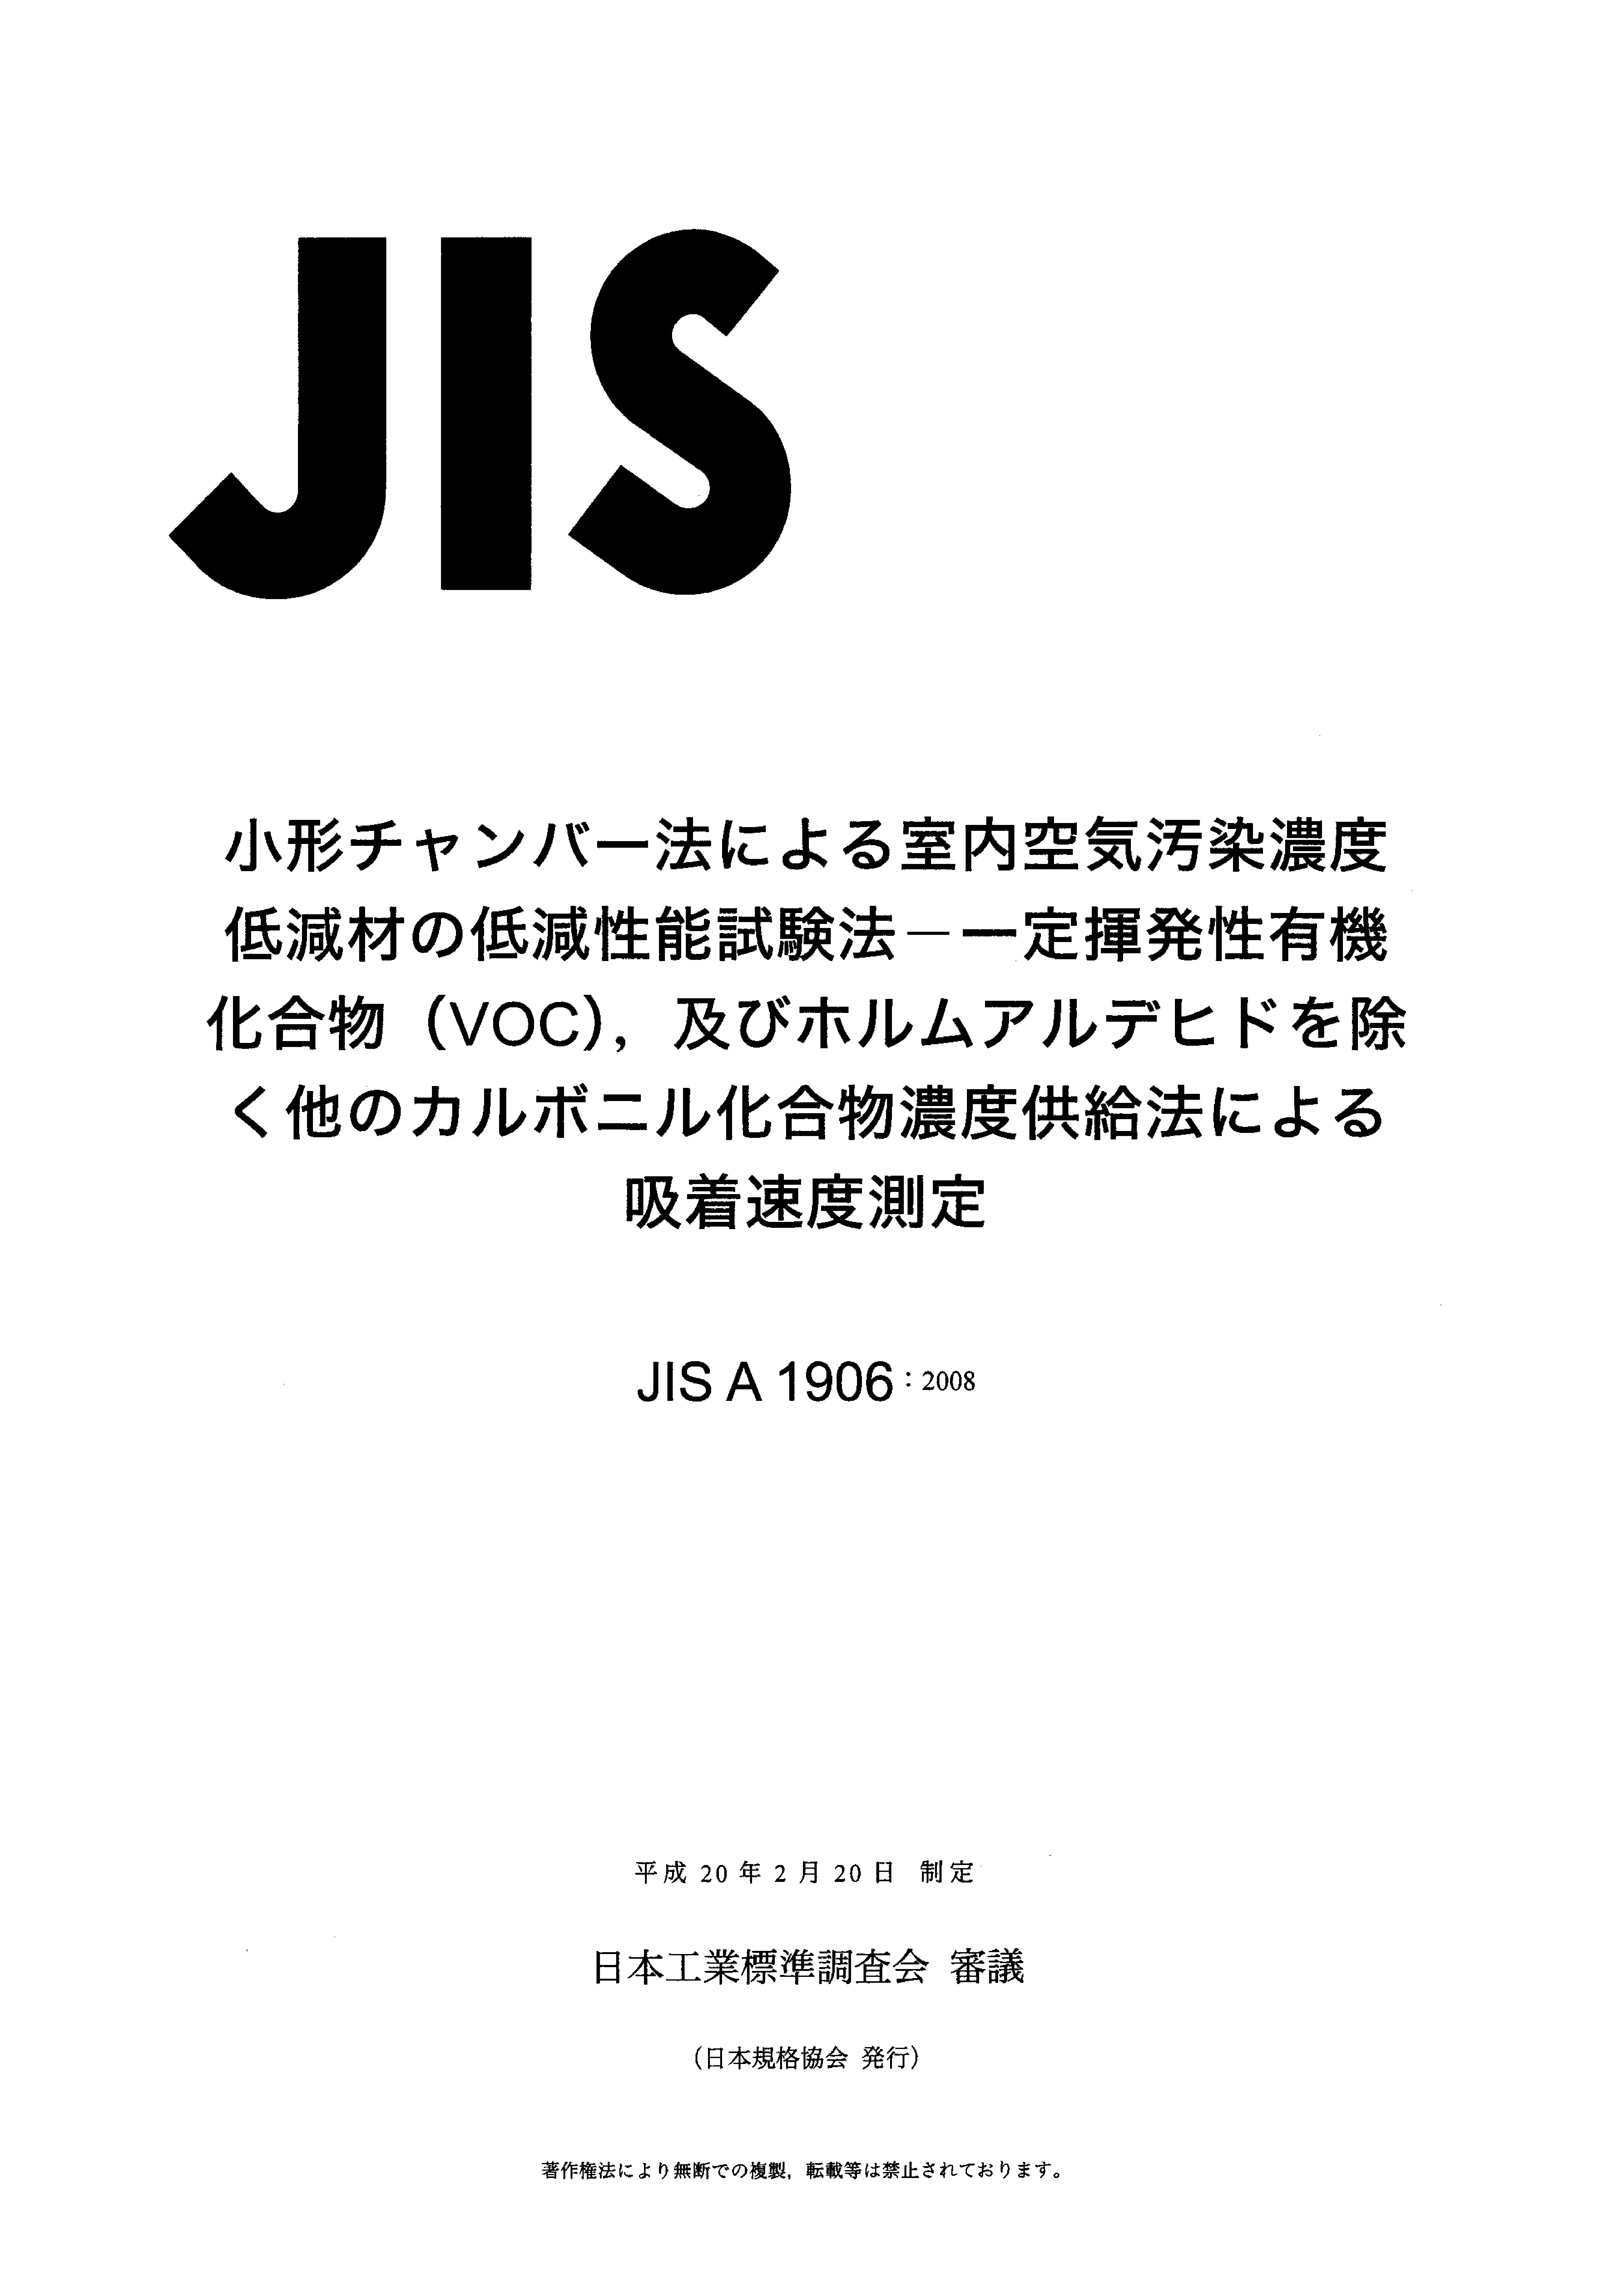 JIS A1906-2008